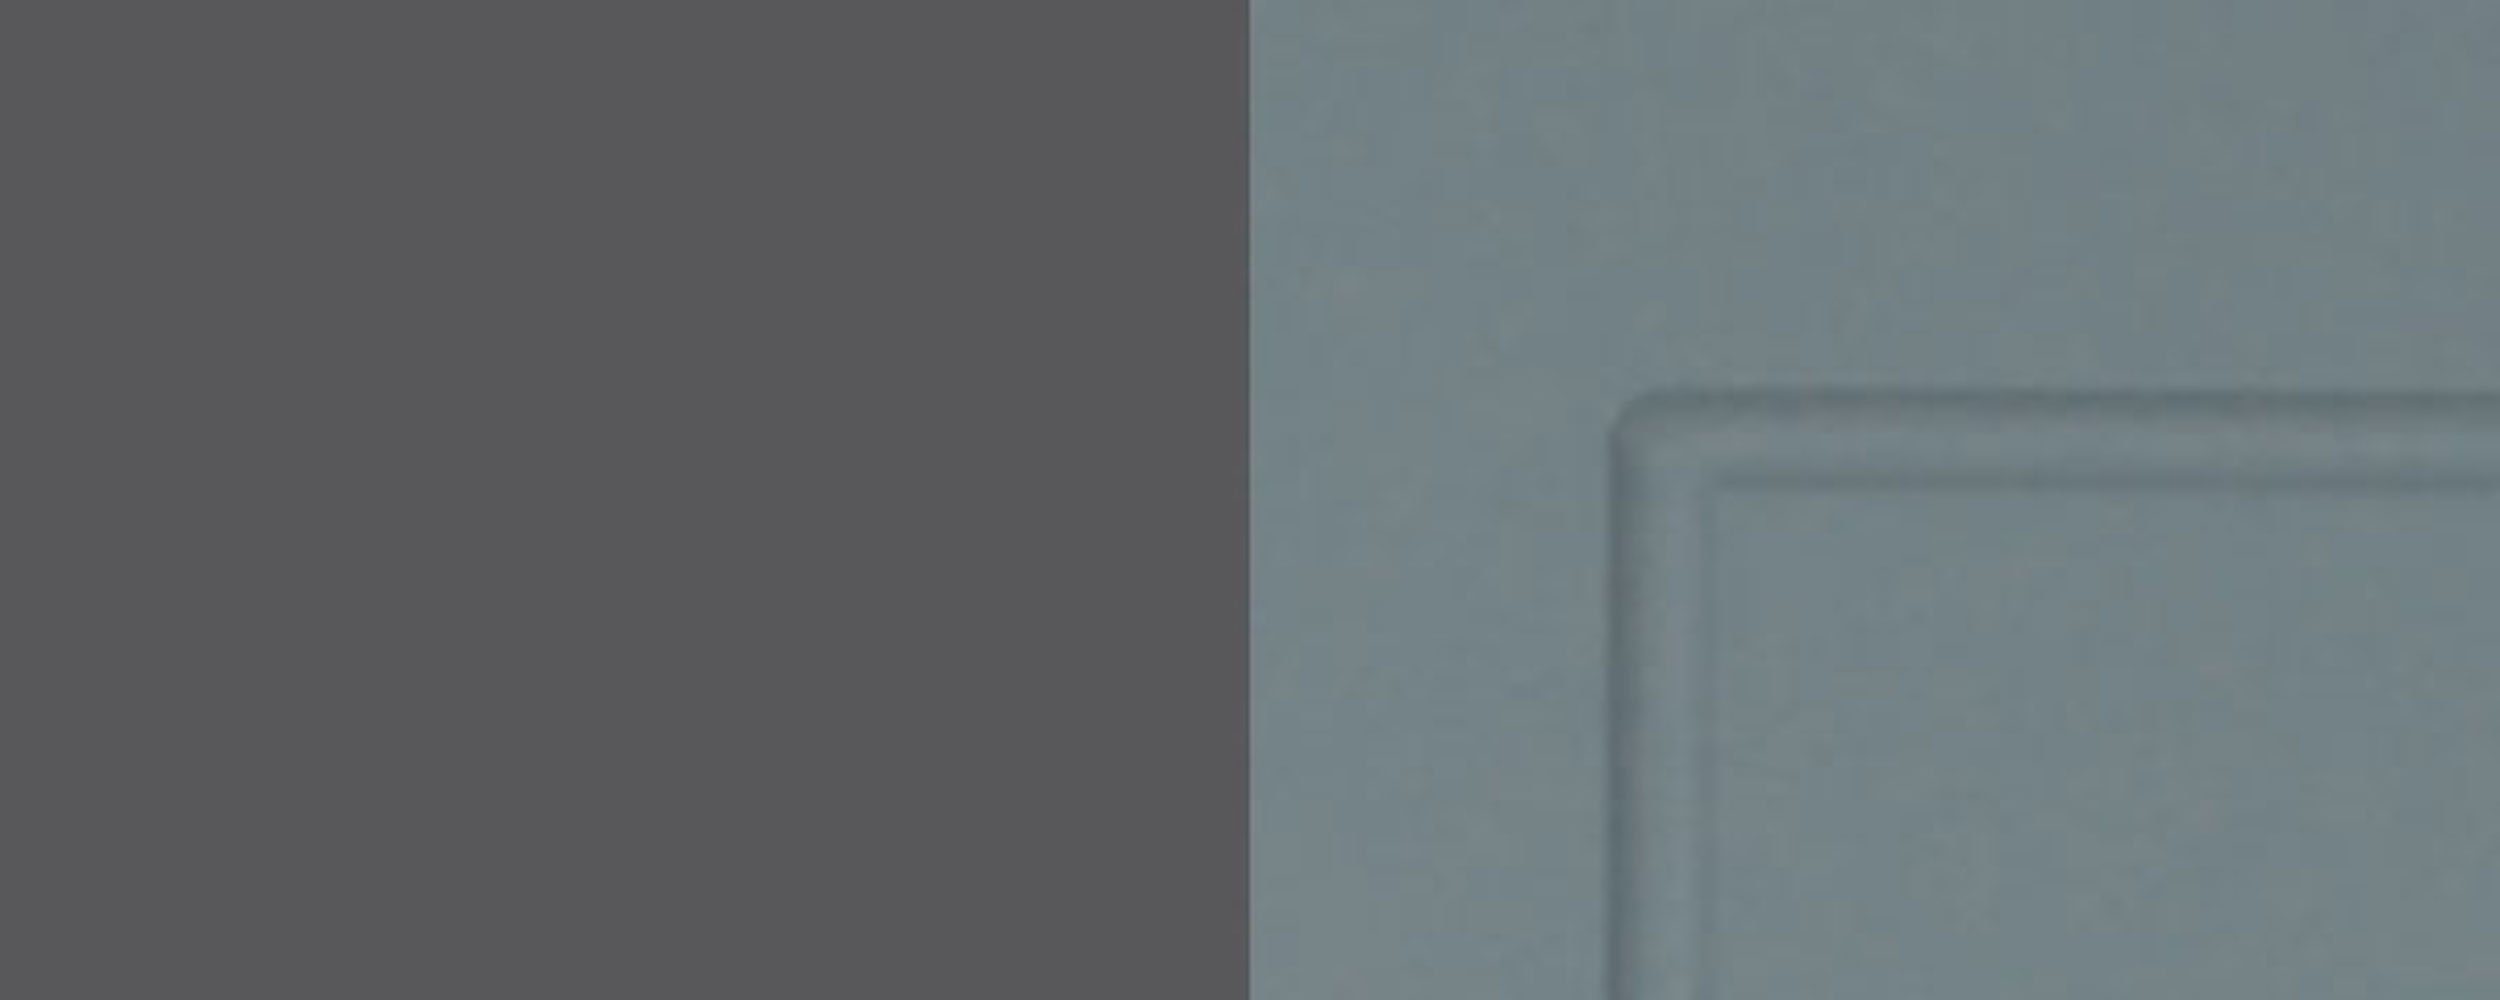 60cm abgerundeten grifflos Feldmann-Wohnen Türen, Faserplatte, Kvantum Fräsungen 2-türig Ausführung Mitteldichte Soft-Close-Funktion, mint (Fronten & Faserplatte) dekorativen Eckhängeschrank Ecken, mit Front-, und matt leicht wählbar Korpusfarbe